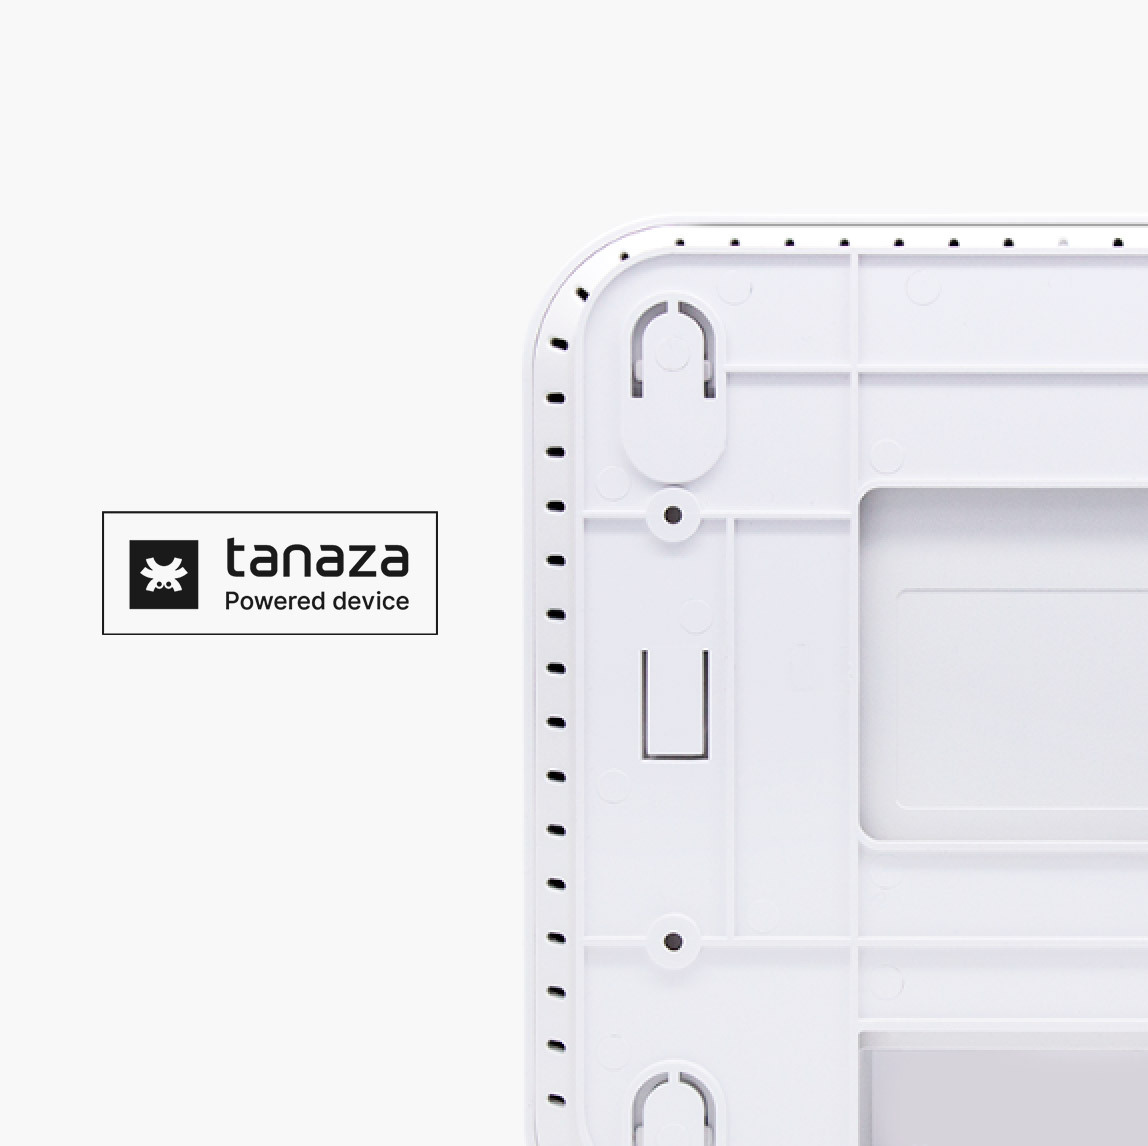 Tanaza Powered Device